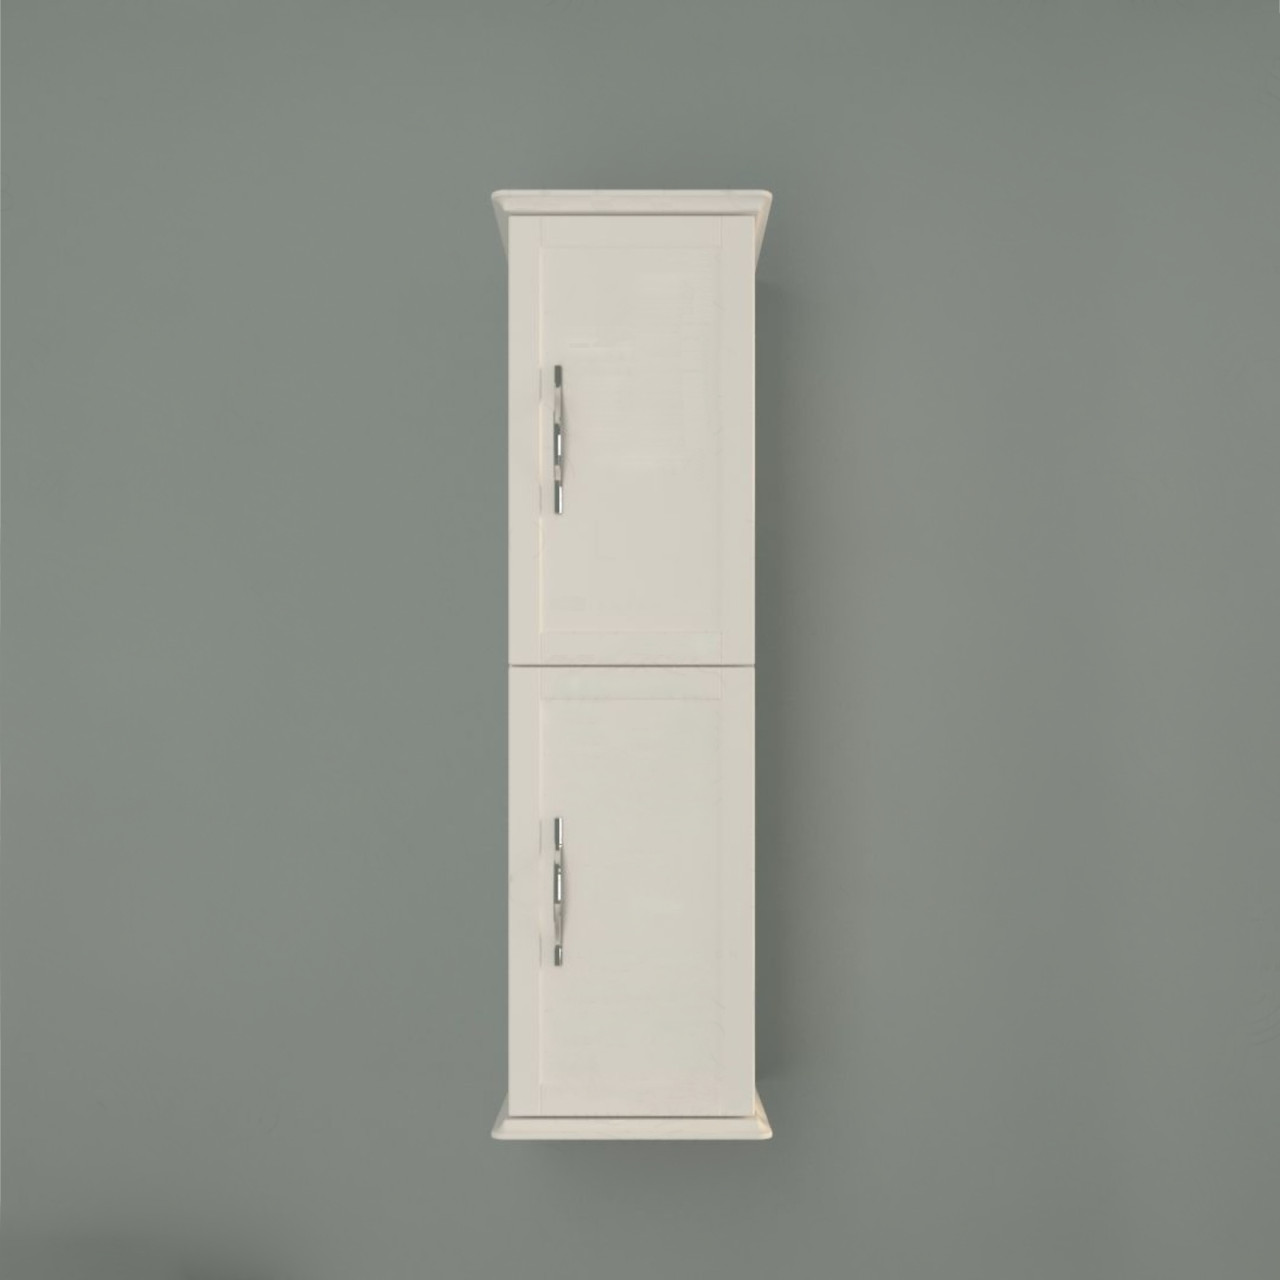 Colonna bagno sospesa h.114 cm bianco opaco con apertura a doppia anta